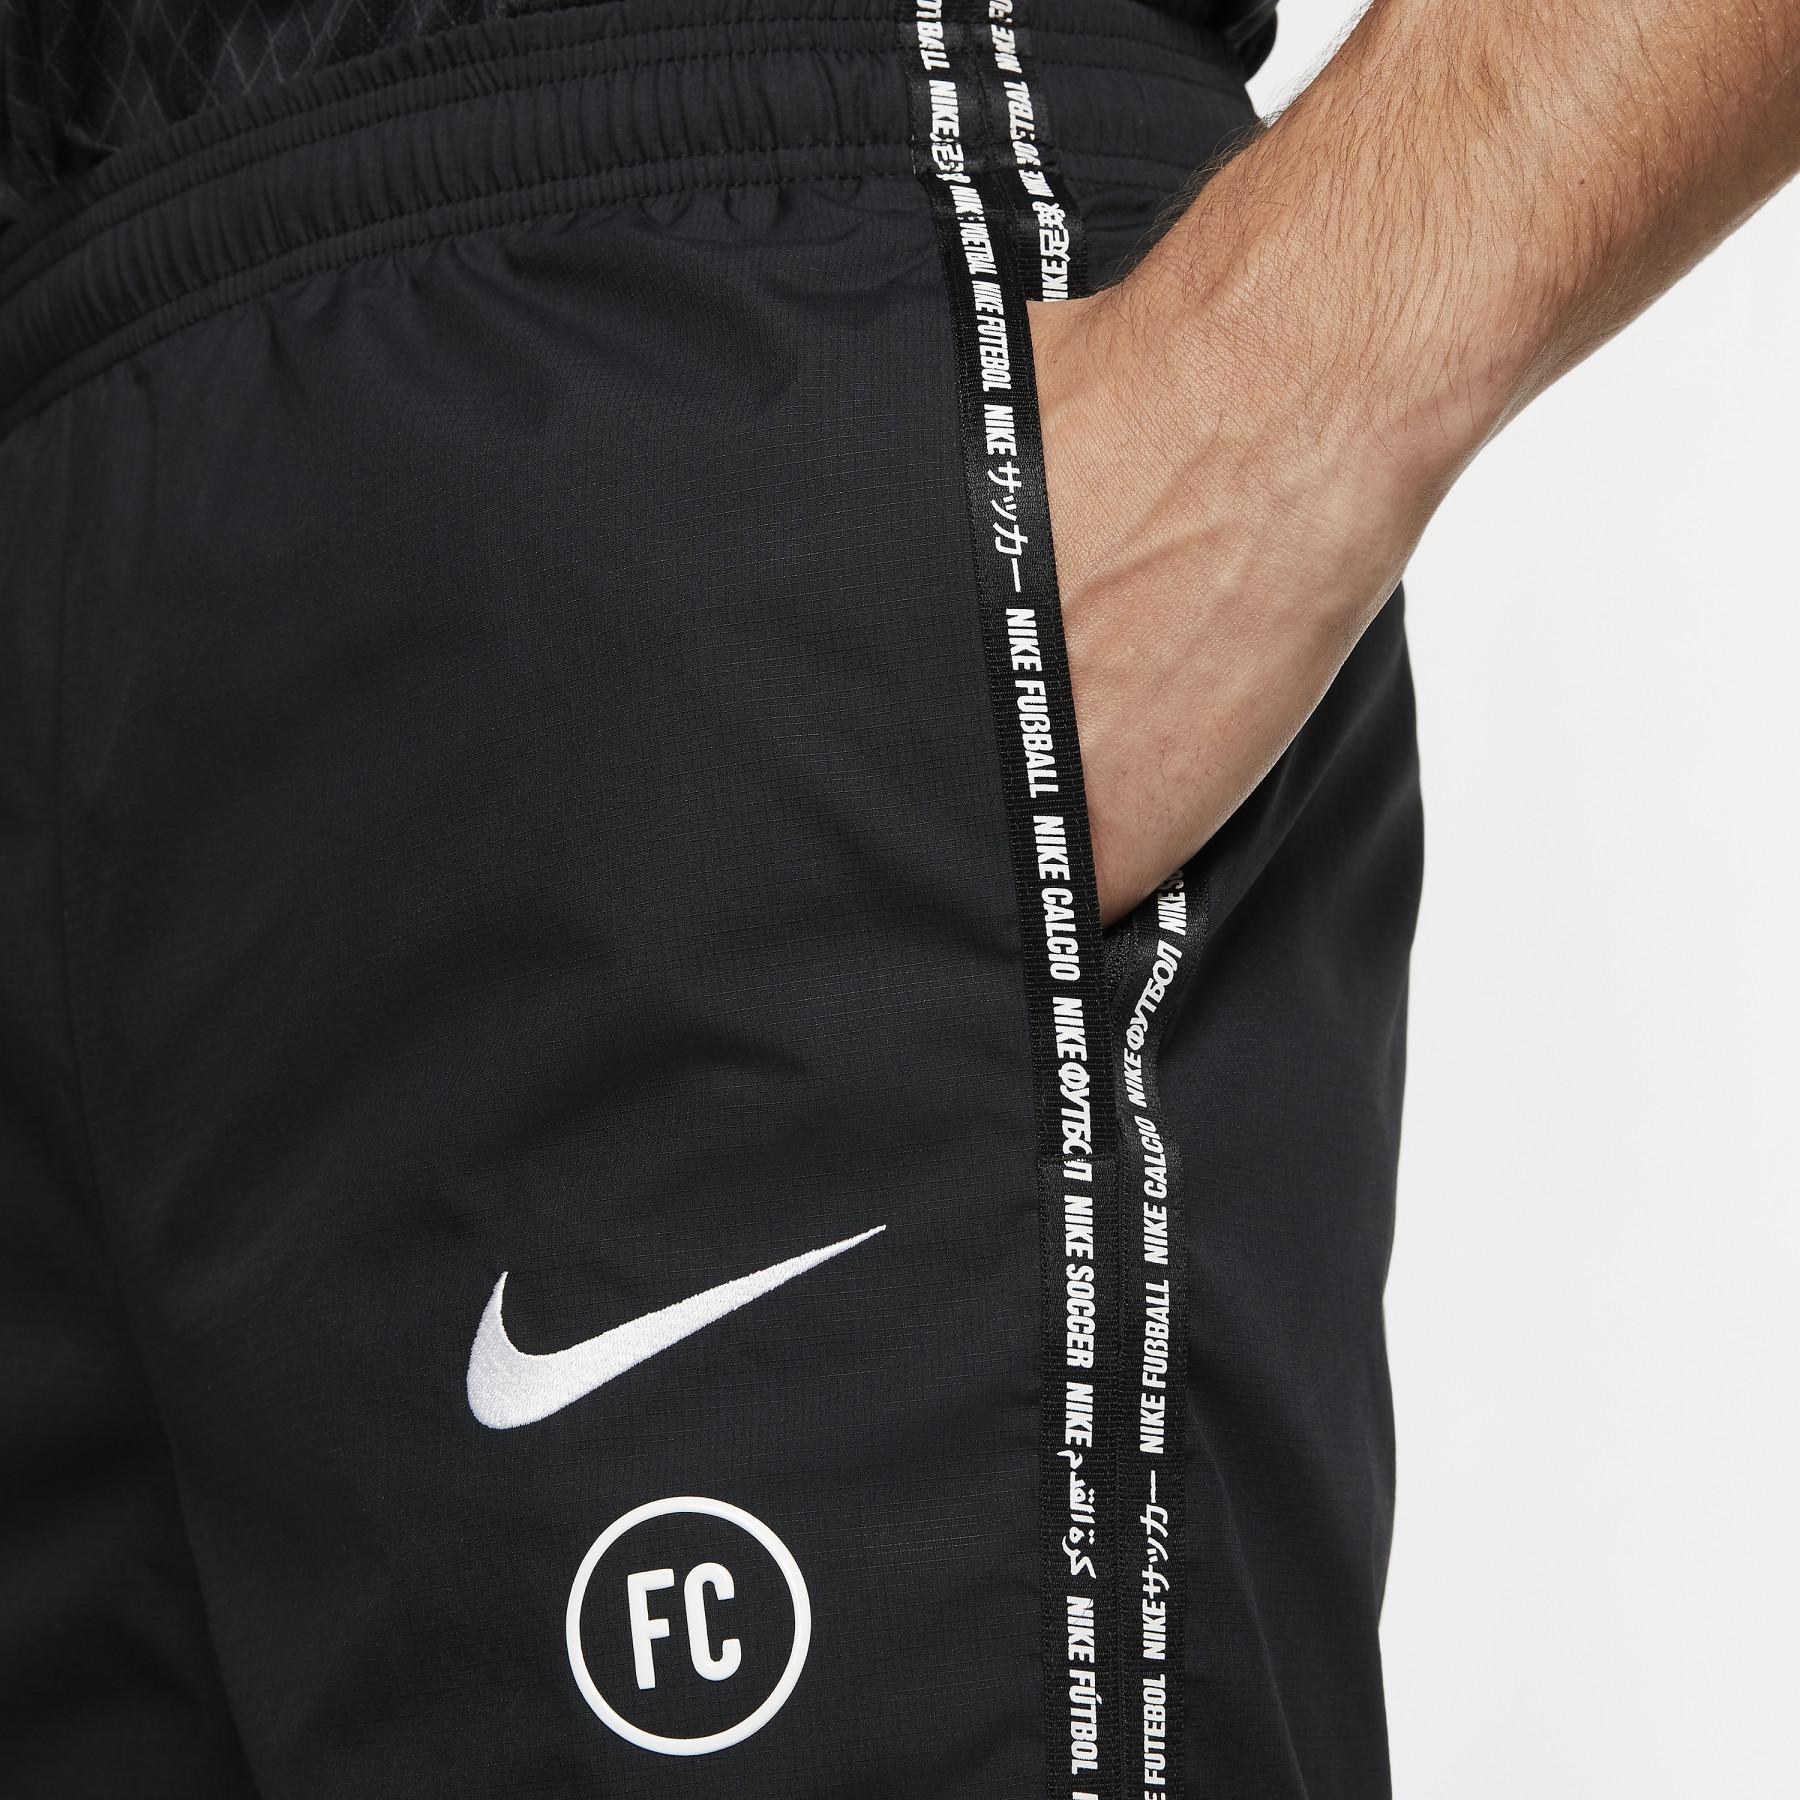 Pantalon Nike F.C.